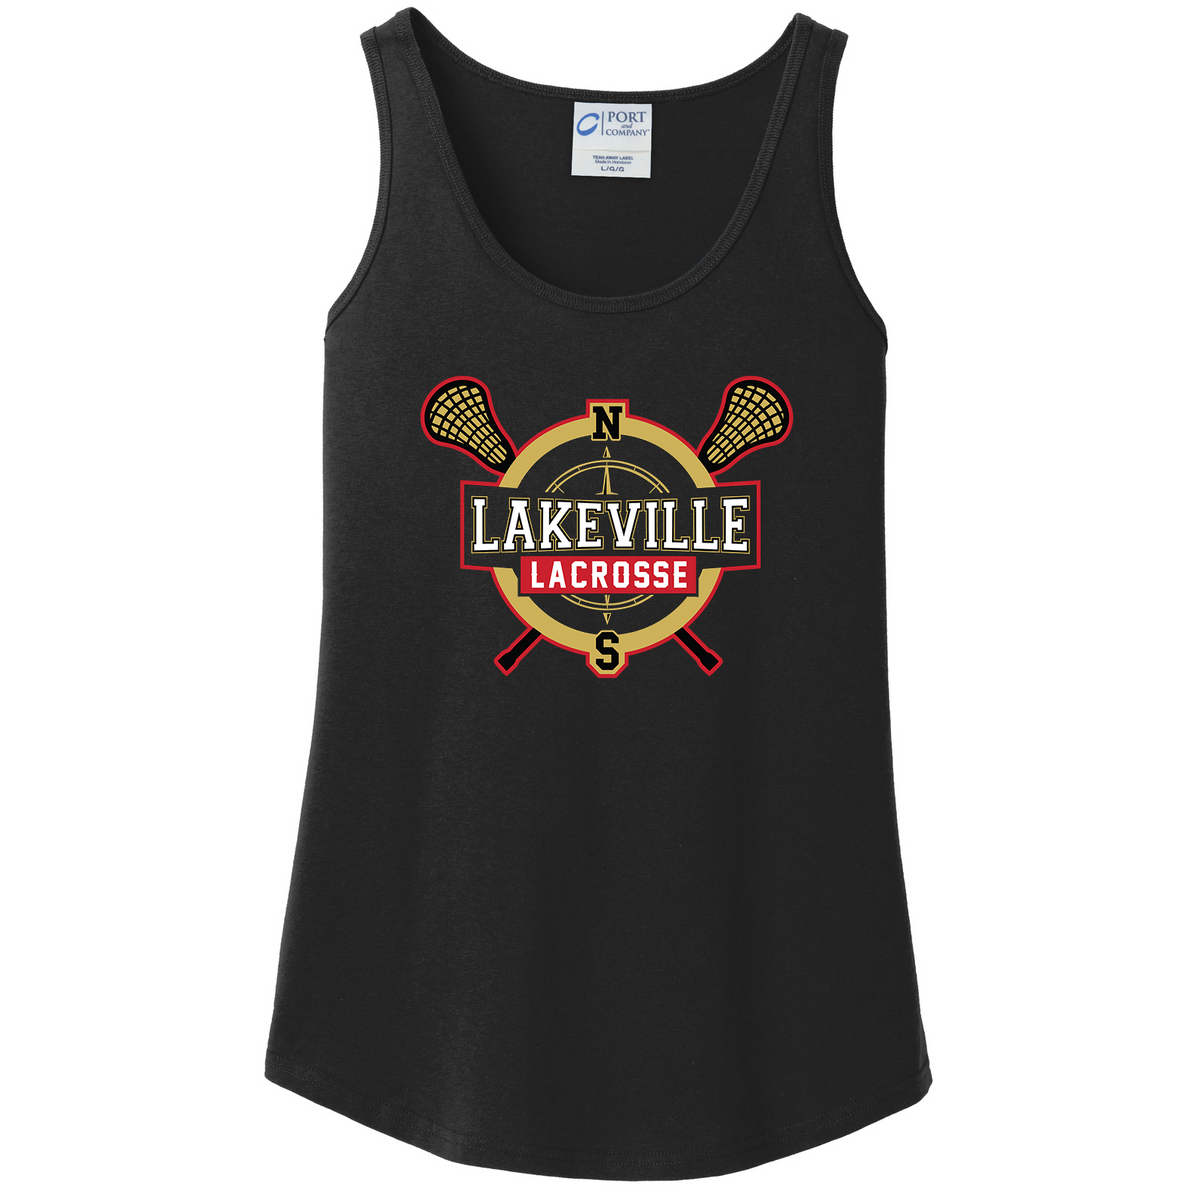 Lakeville Lacrosse Women's Tank Top